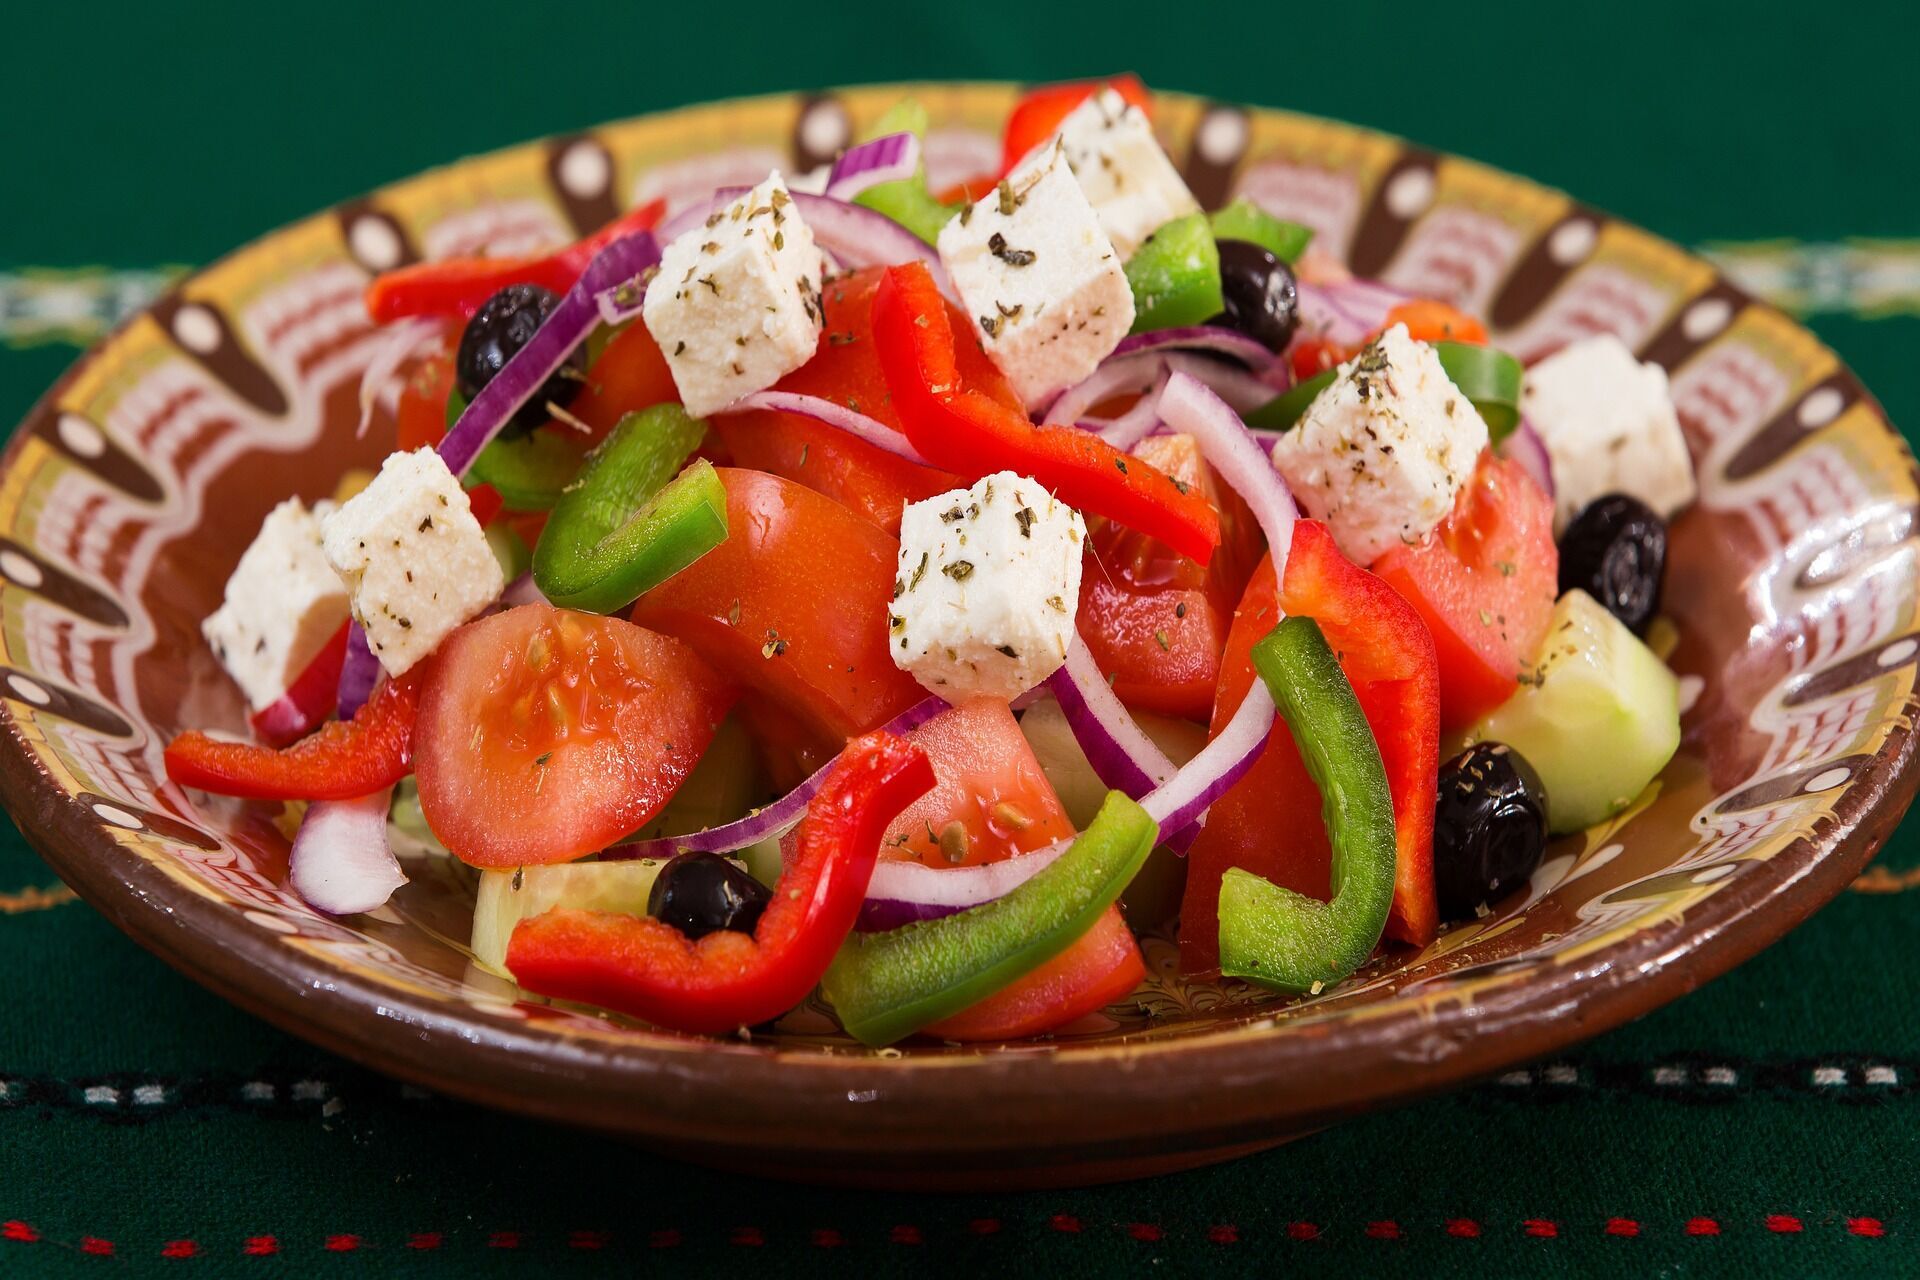 Вкусовые качества традиционных блюд Греции удивительны и способны порадовать любого гурмана